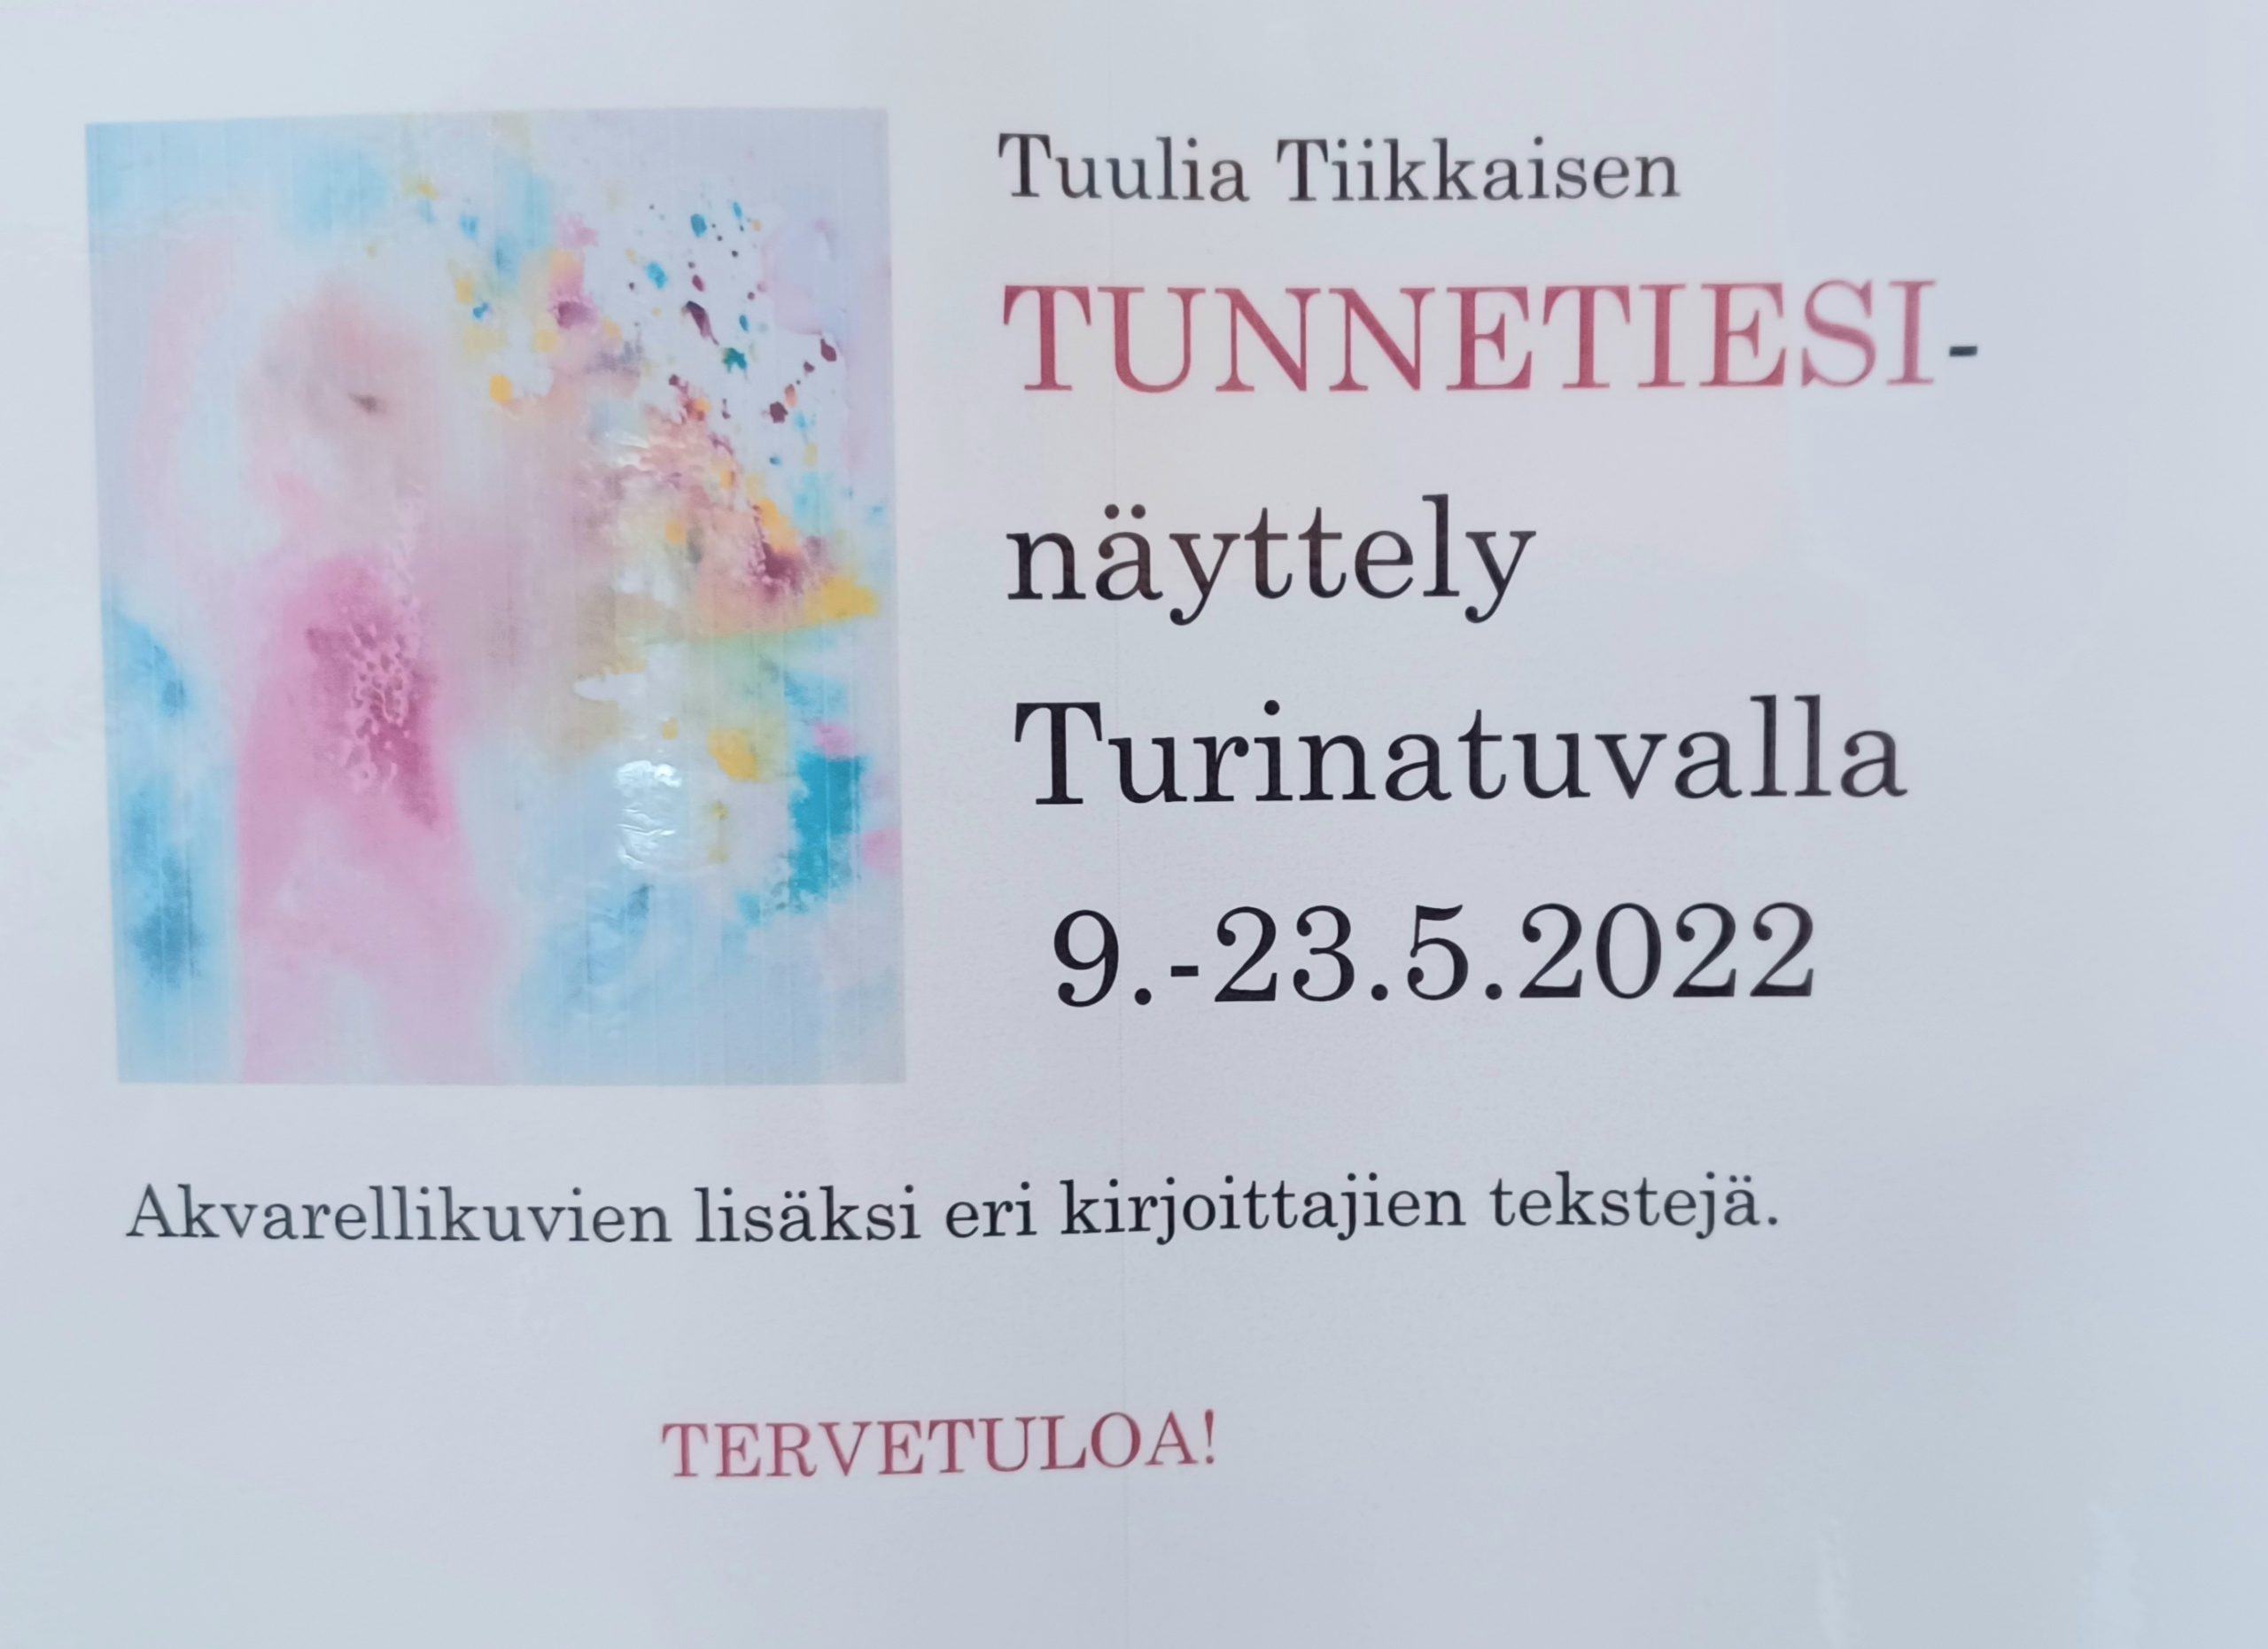 Tunnetiesi -näyttely Turinatuvalla 9.–23.5.2022